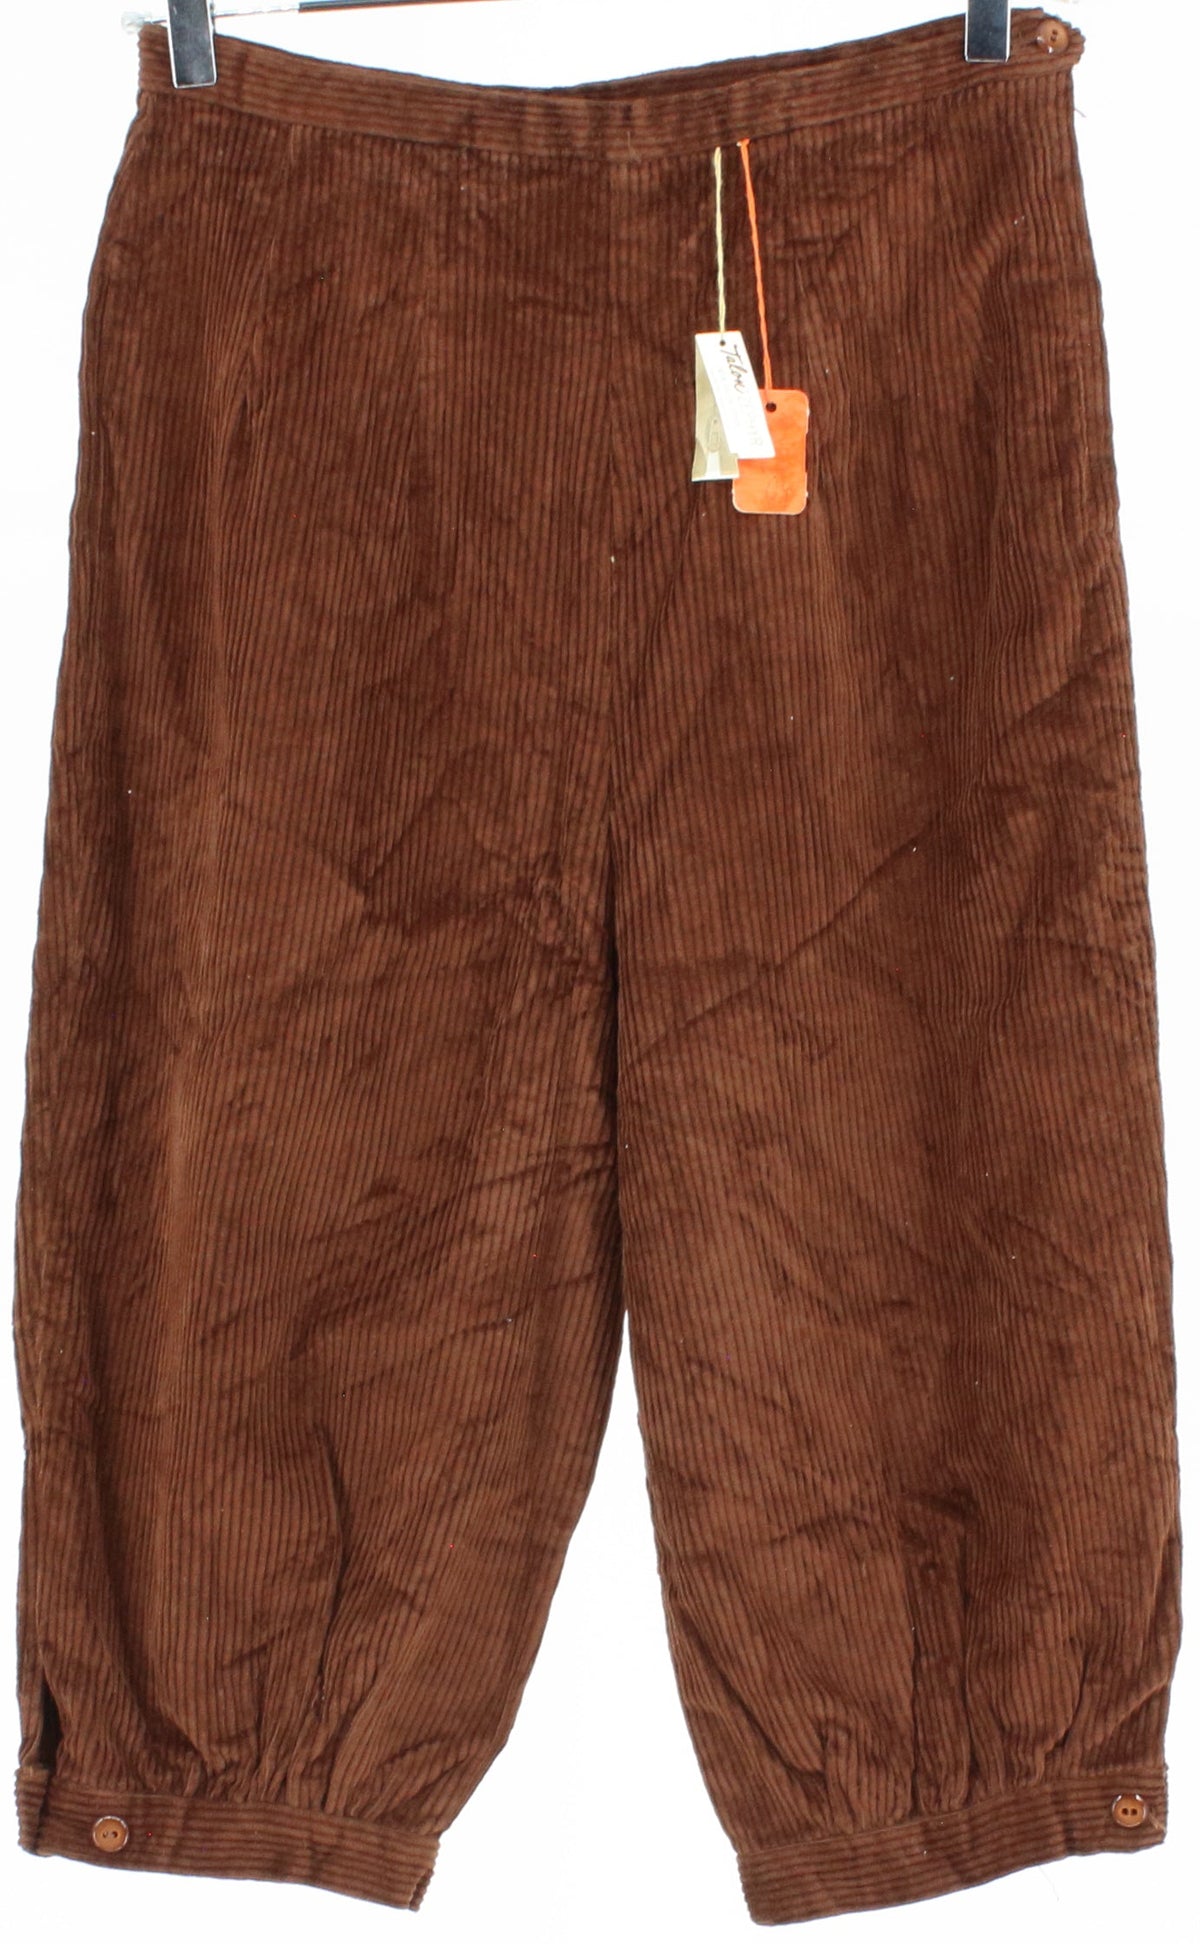 Brown Corduroy Women's Capri Pants